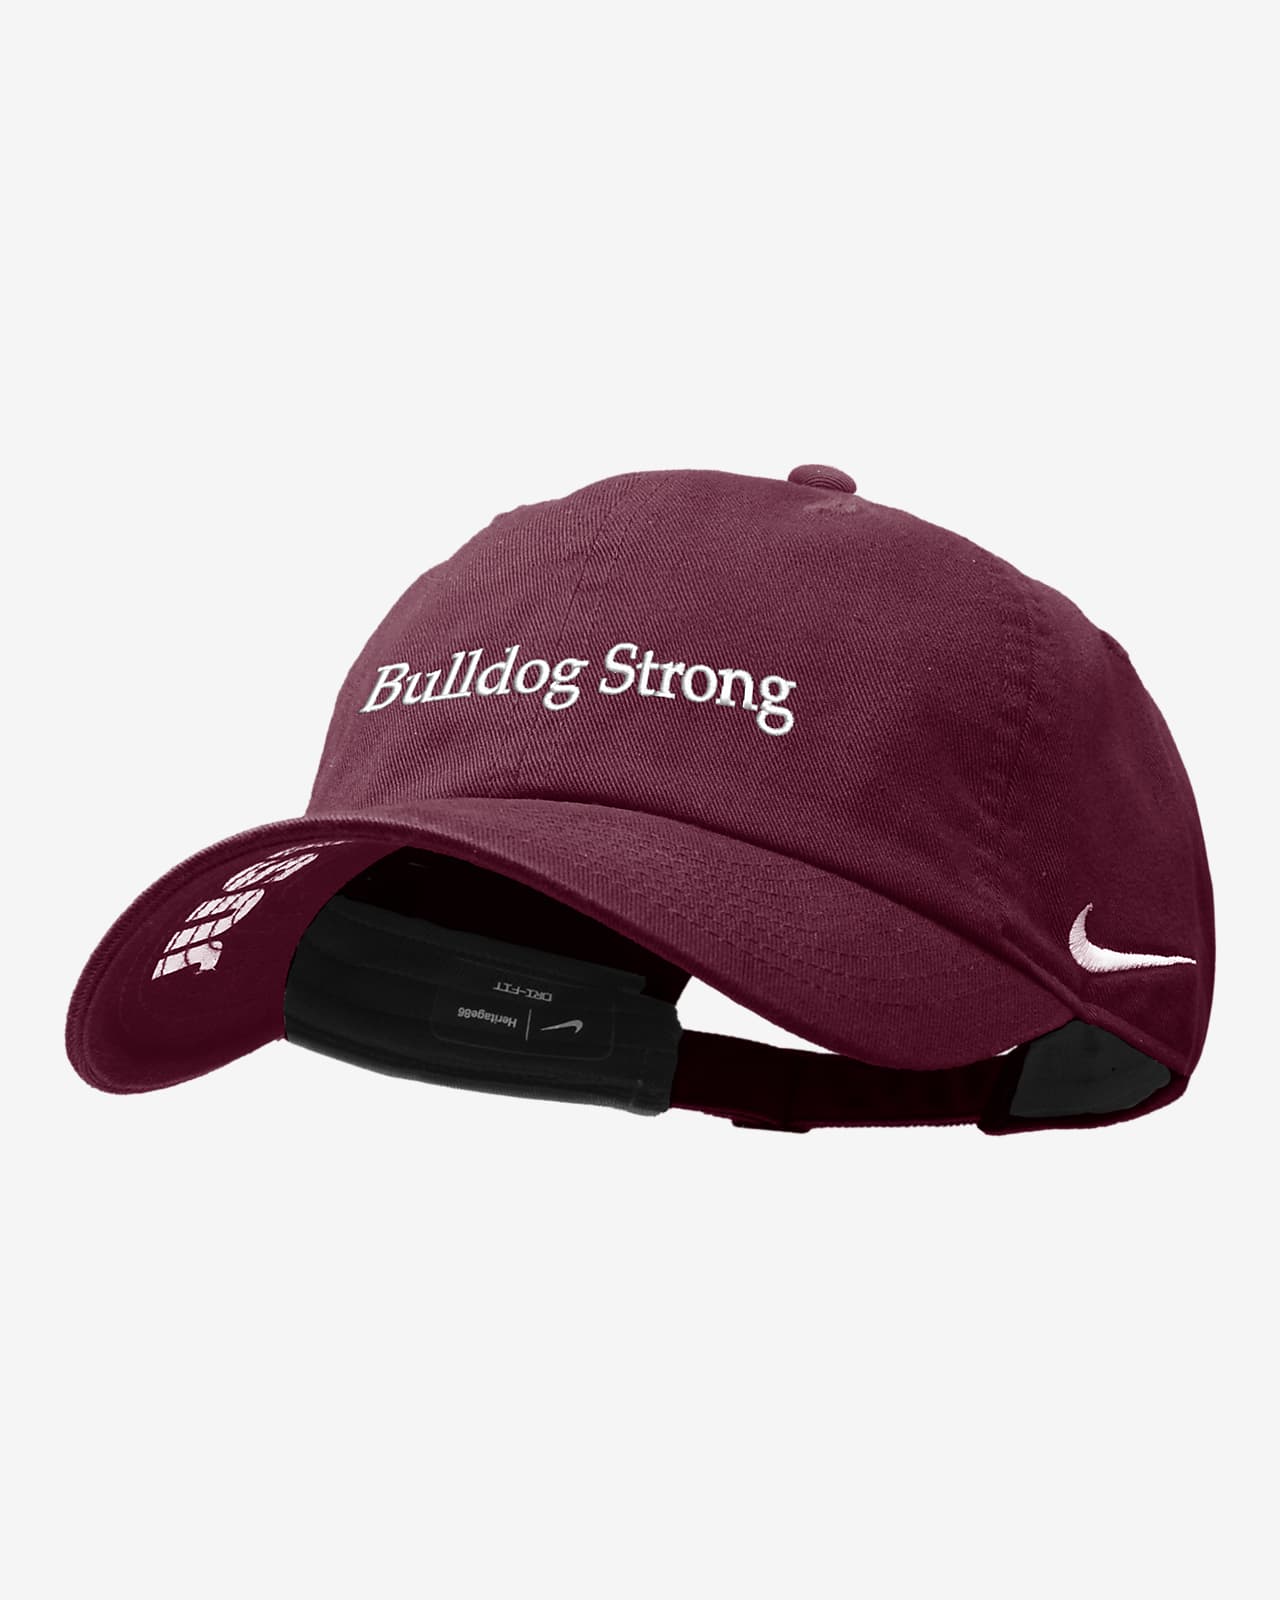 Alabama A&M Nike College Adjustable Cap